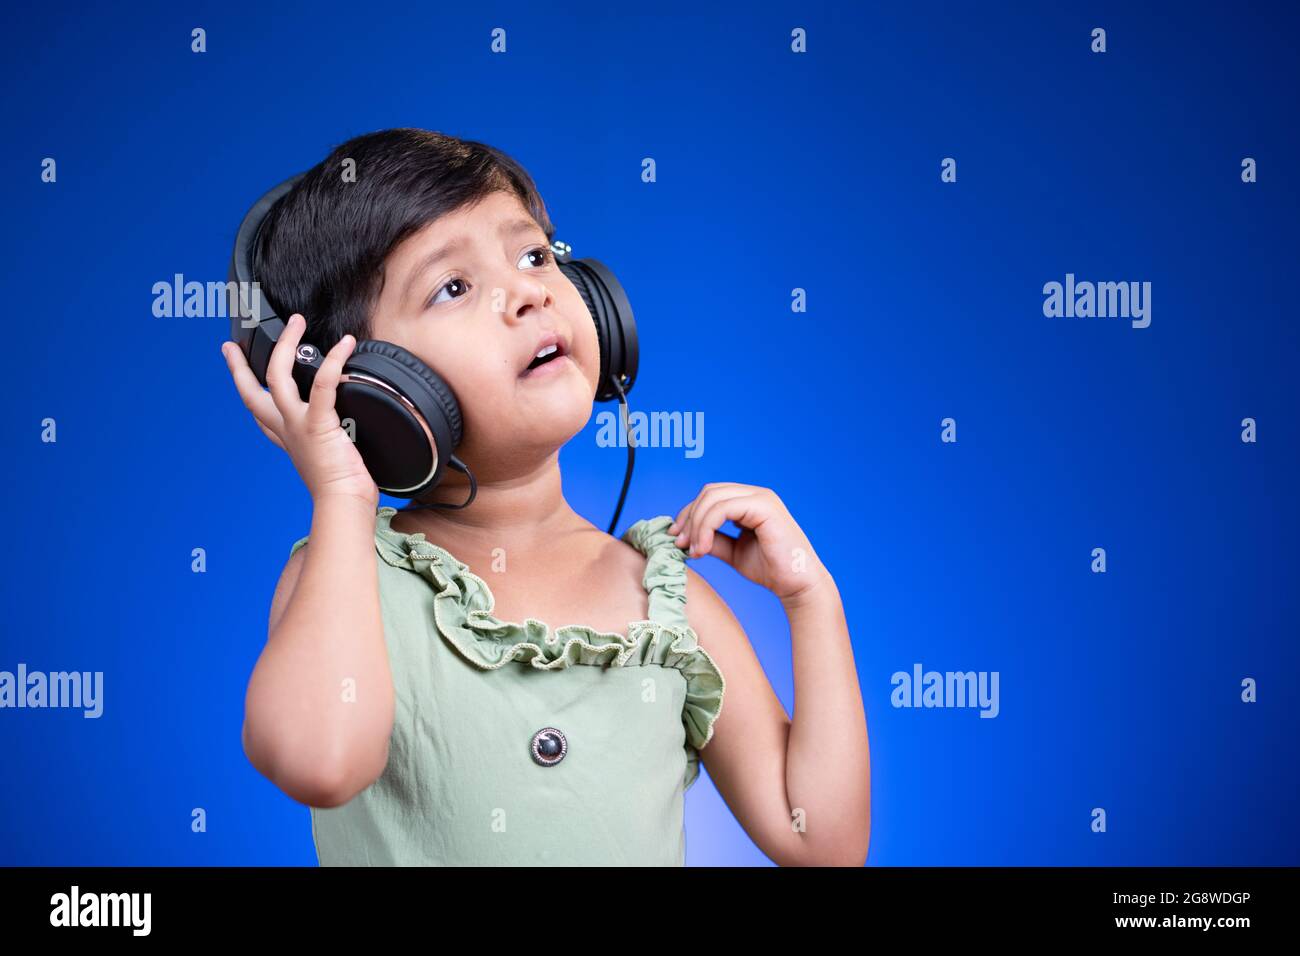 Fröhliches kleines Kind mit Kopfhörern, das auf blauem Hintergrund laut singt und dabei das Lieblingslied genießt. Stockfoto